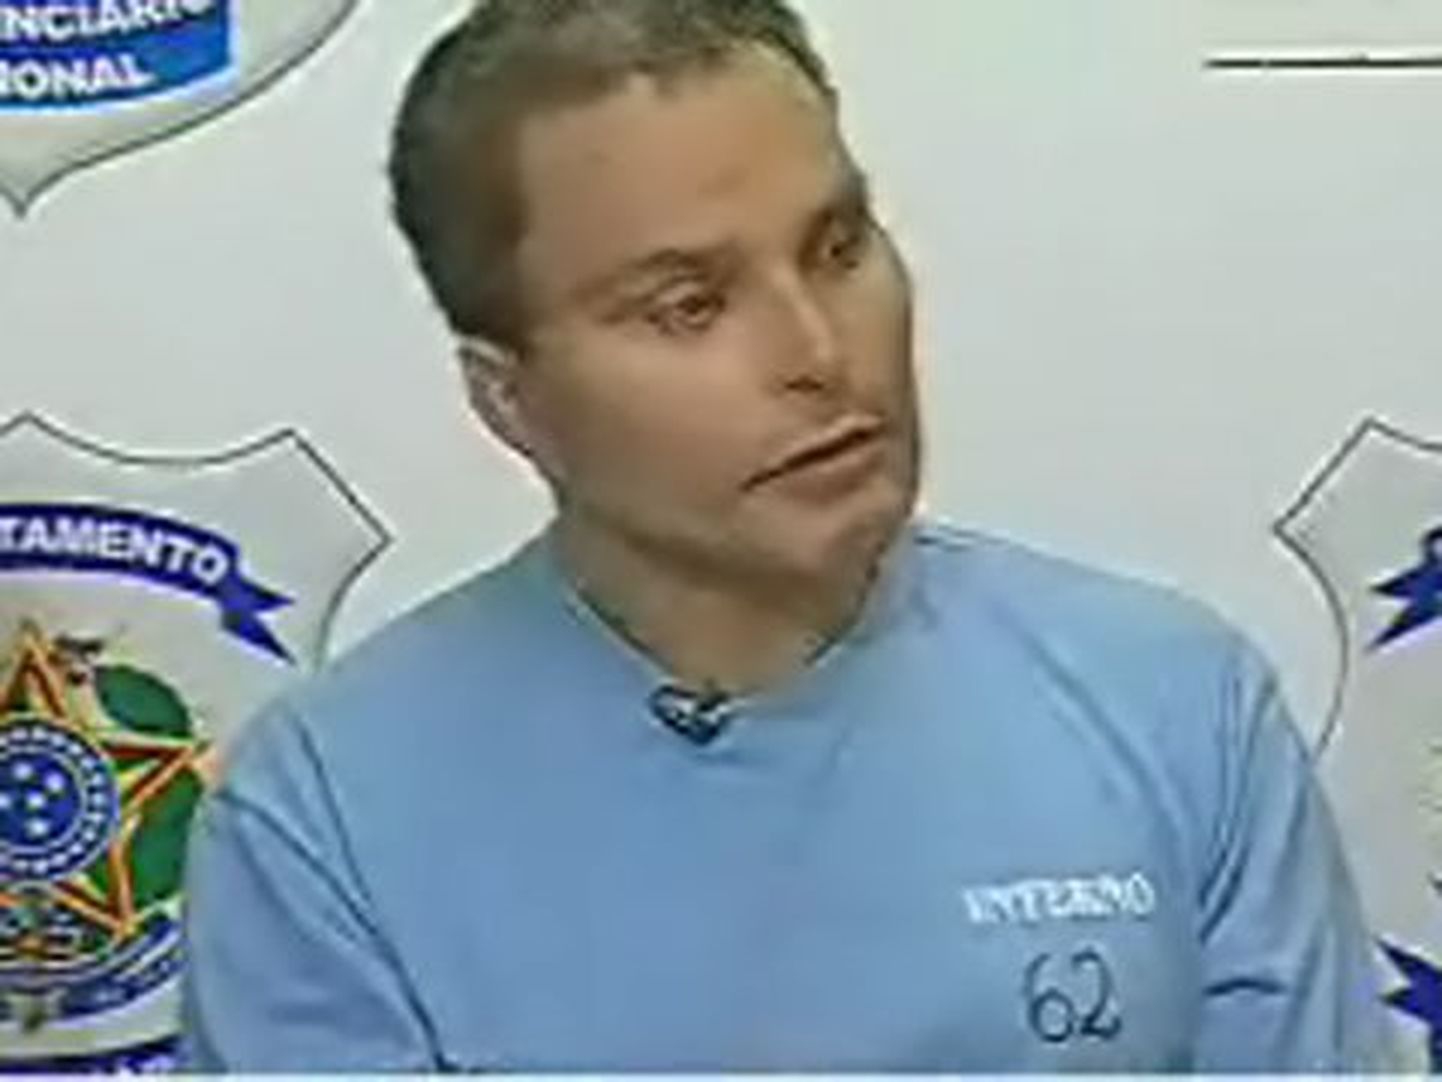 Juan Carlos Ramirez Abadia